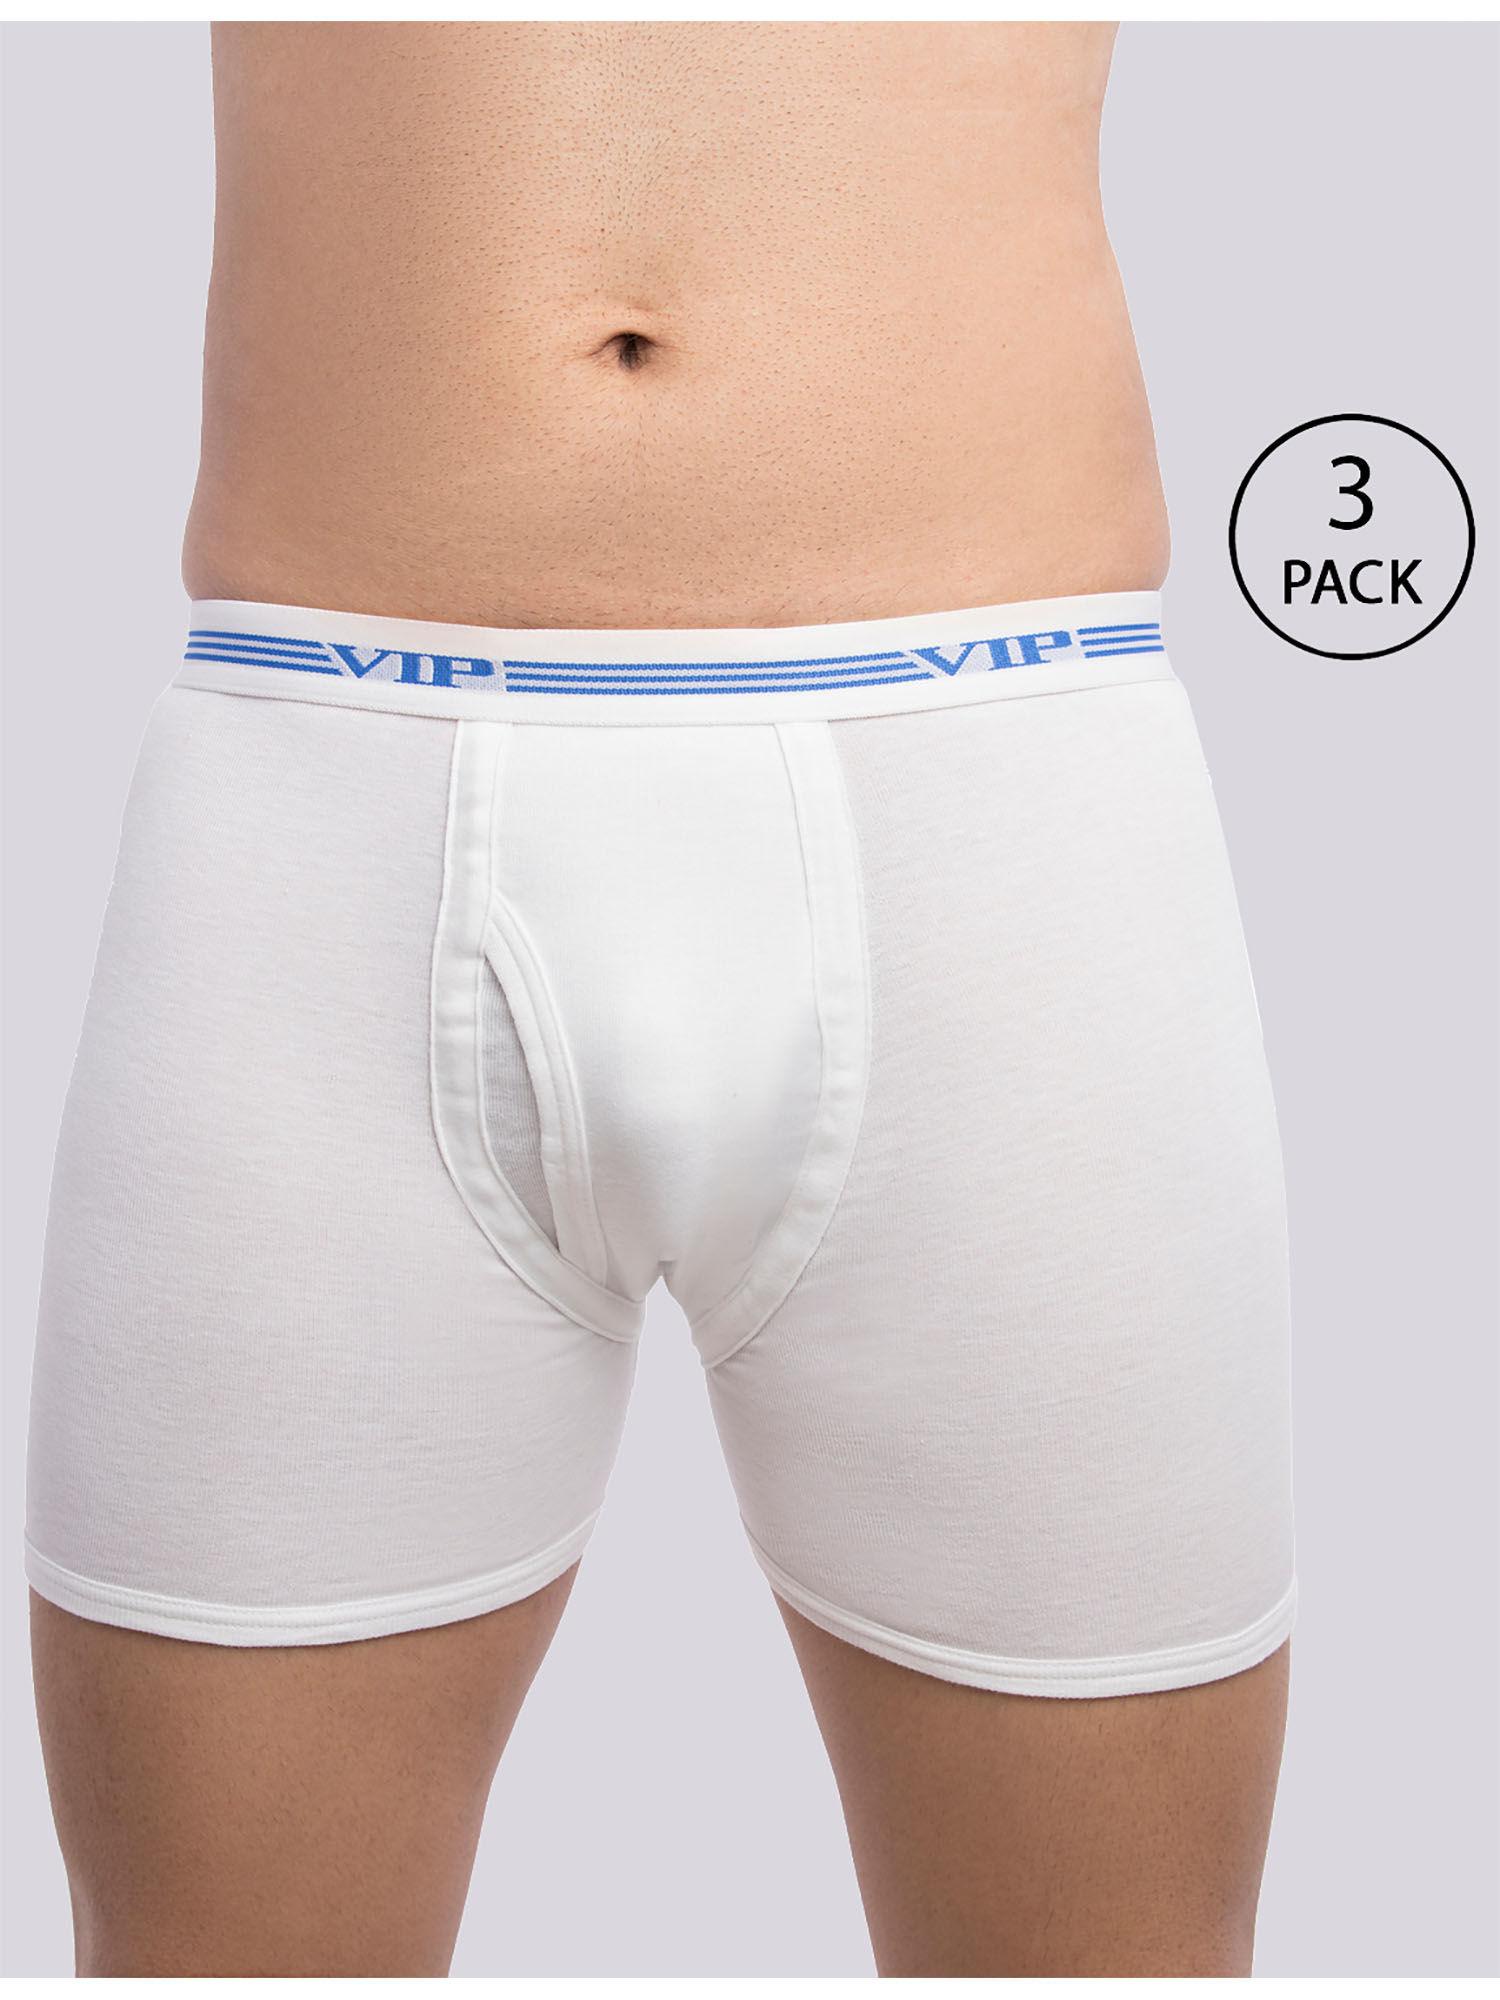 men's advanta solid white 100% cotton rib trunks (pack of 3)